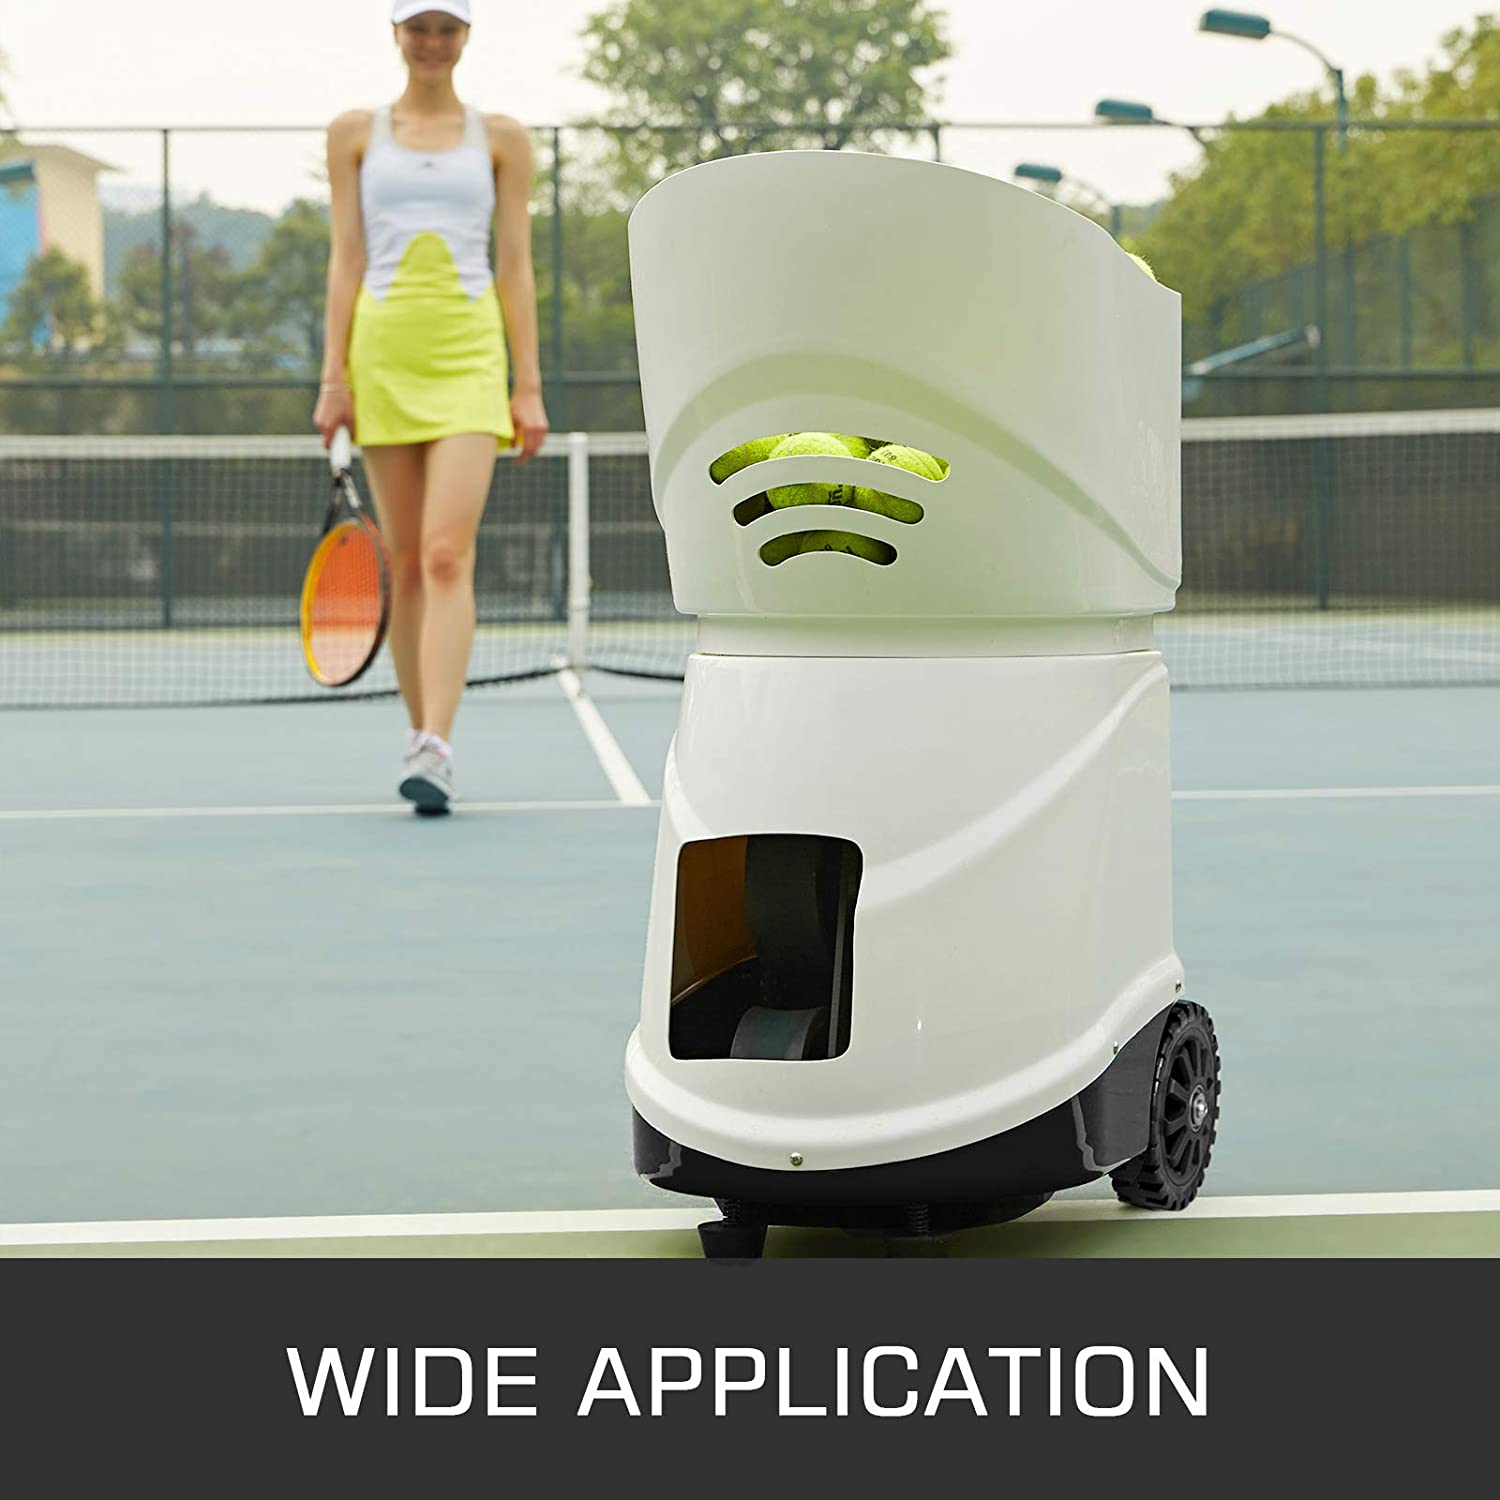 Amhuui Balle de Tennis, Lanceur Automatique de balles, équipement  d'entraînement de Tennis, contrôle par Application Mobile, Modes  d'entraînement